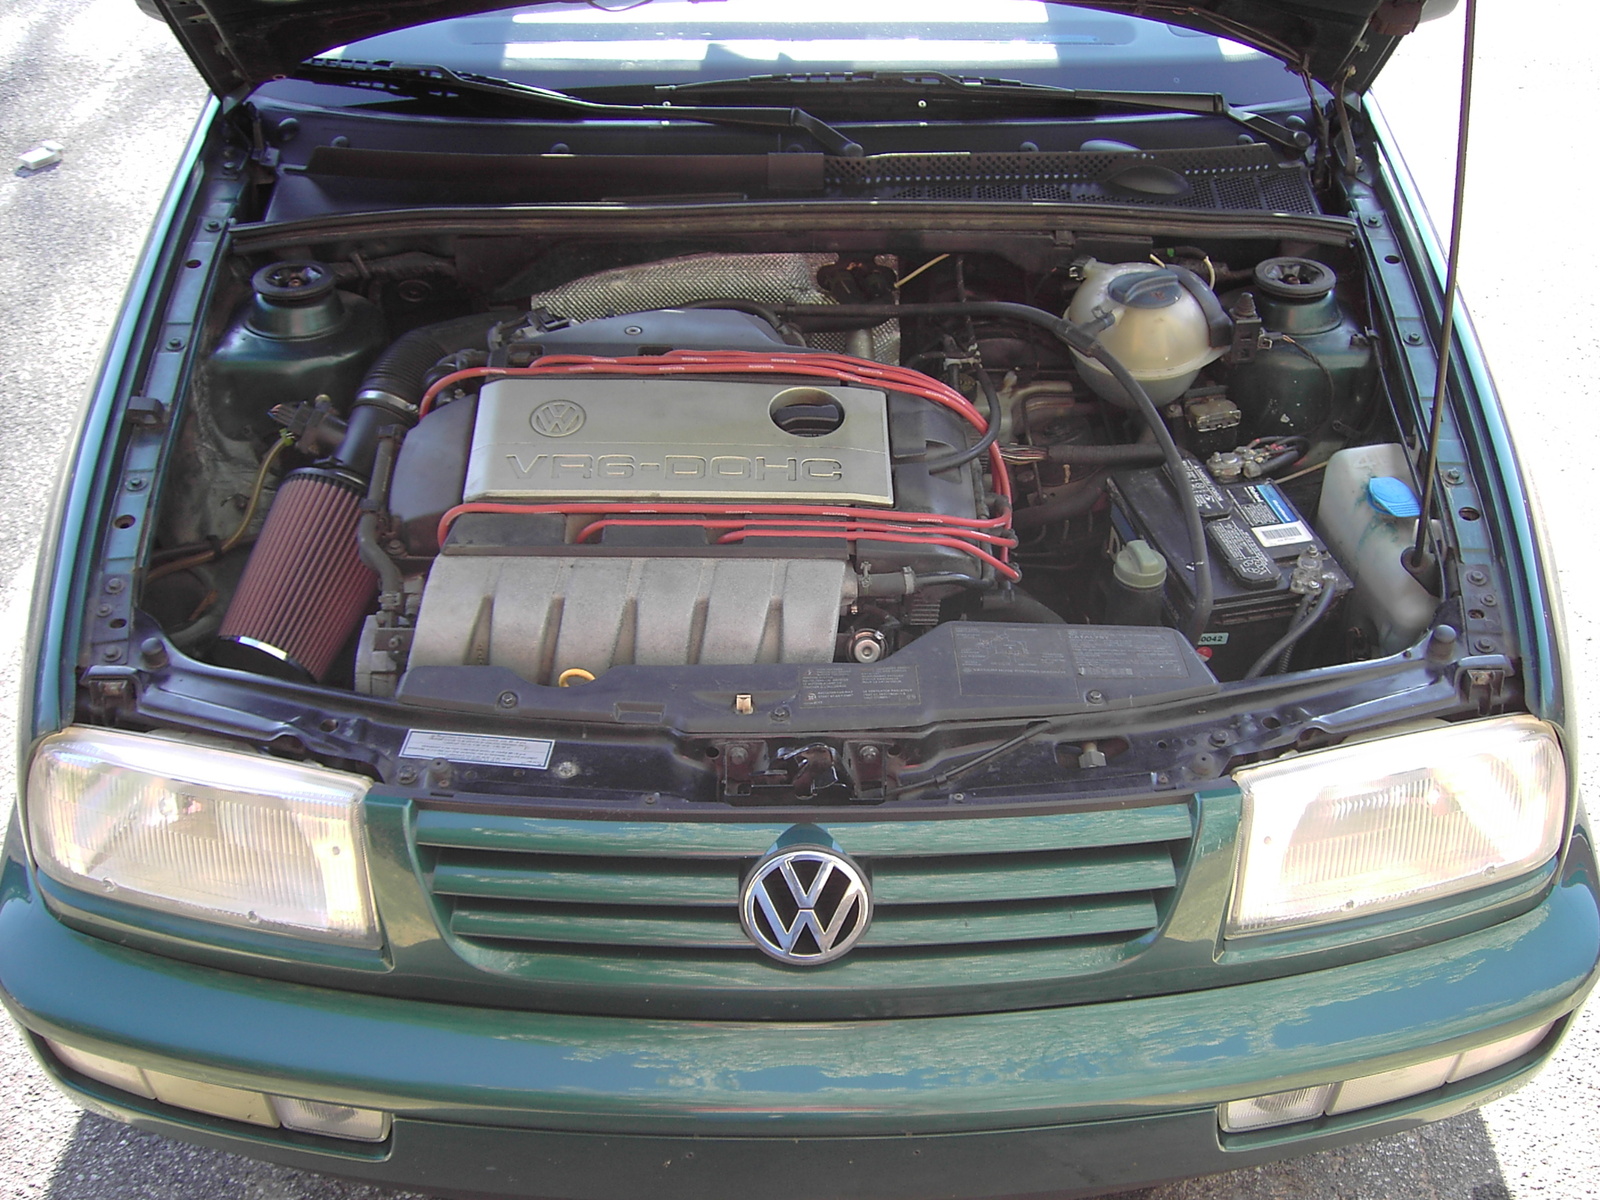 Volkswagen Jetta Golf Gti 1993 1994 1995 1996 1997 1998 ...